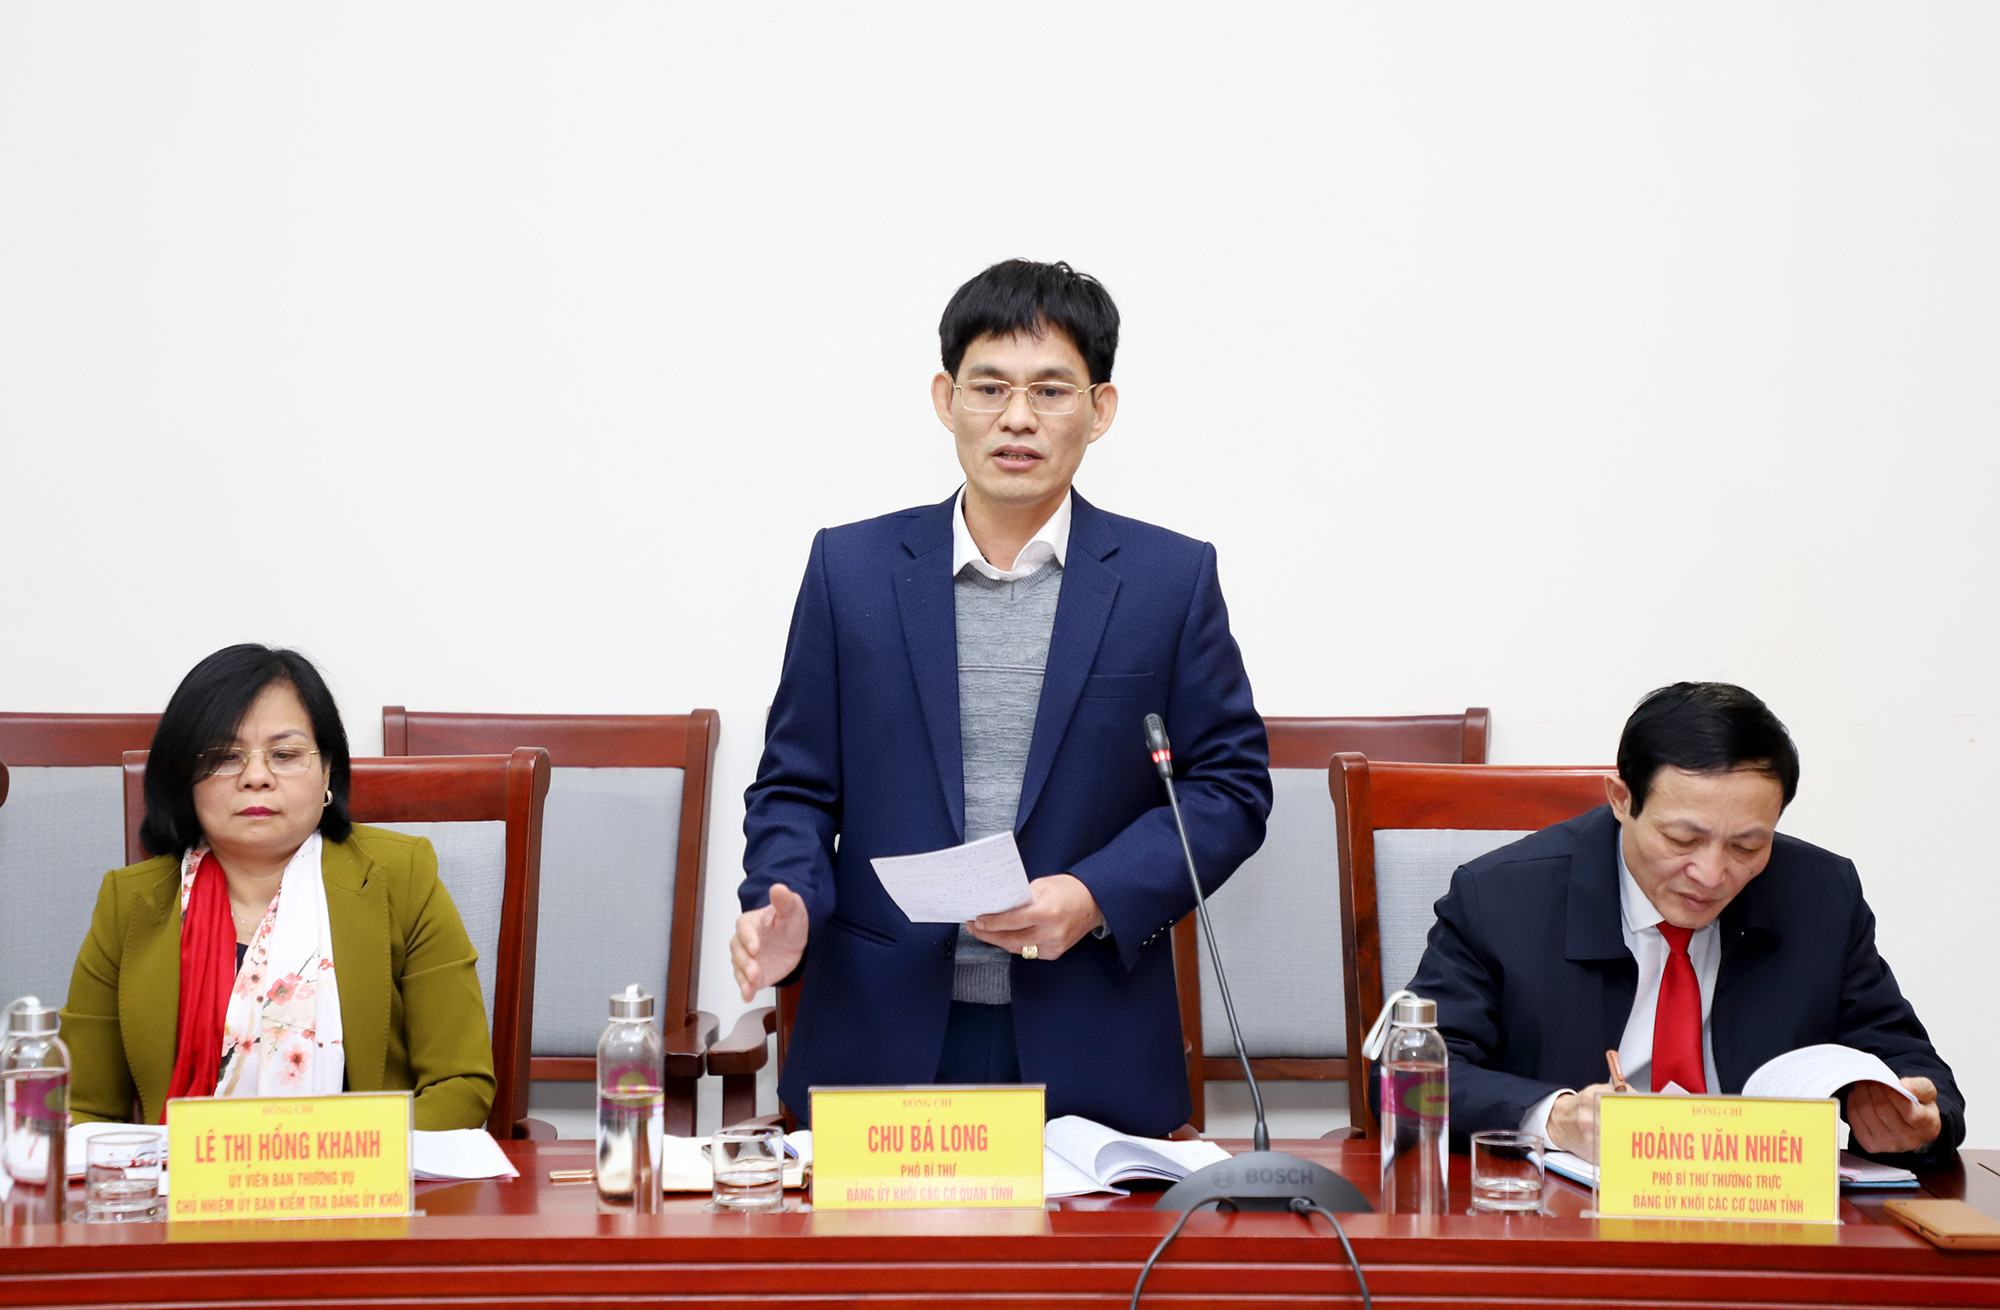 Đồng chí Chu Bá Long - Phó Bí thư Đảng ủy Khối các cơ quan tỉnh cho rằng, trong chương trình phối hợp phải tạo được khát vọng đổi mới không chỉ trong lãnh đạo mà phải trong tất cả các sở, ban, ngành. 